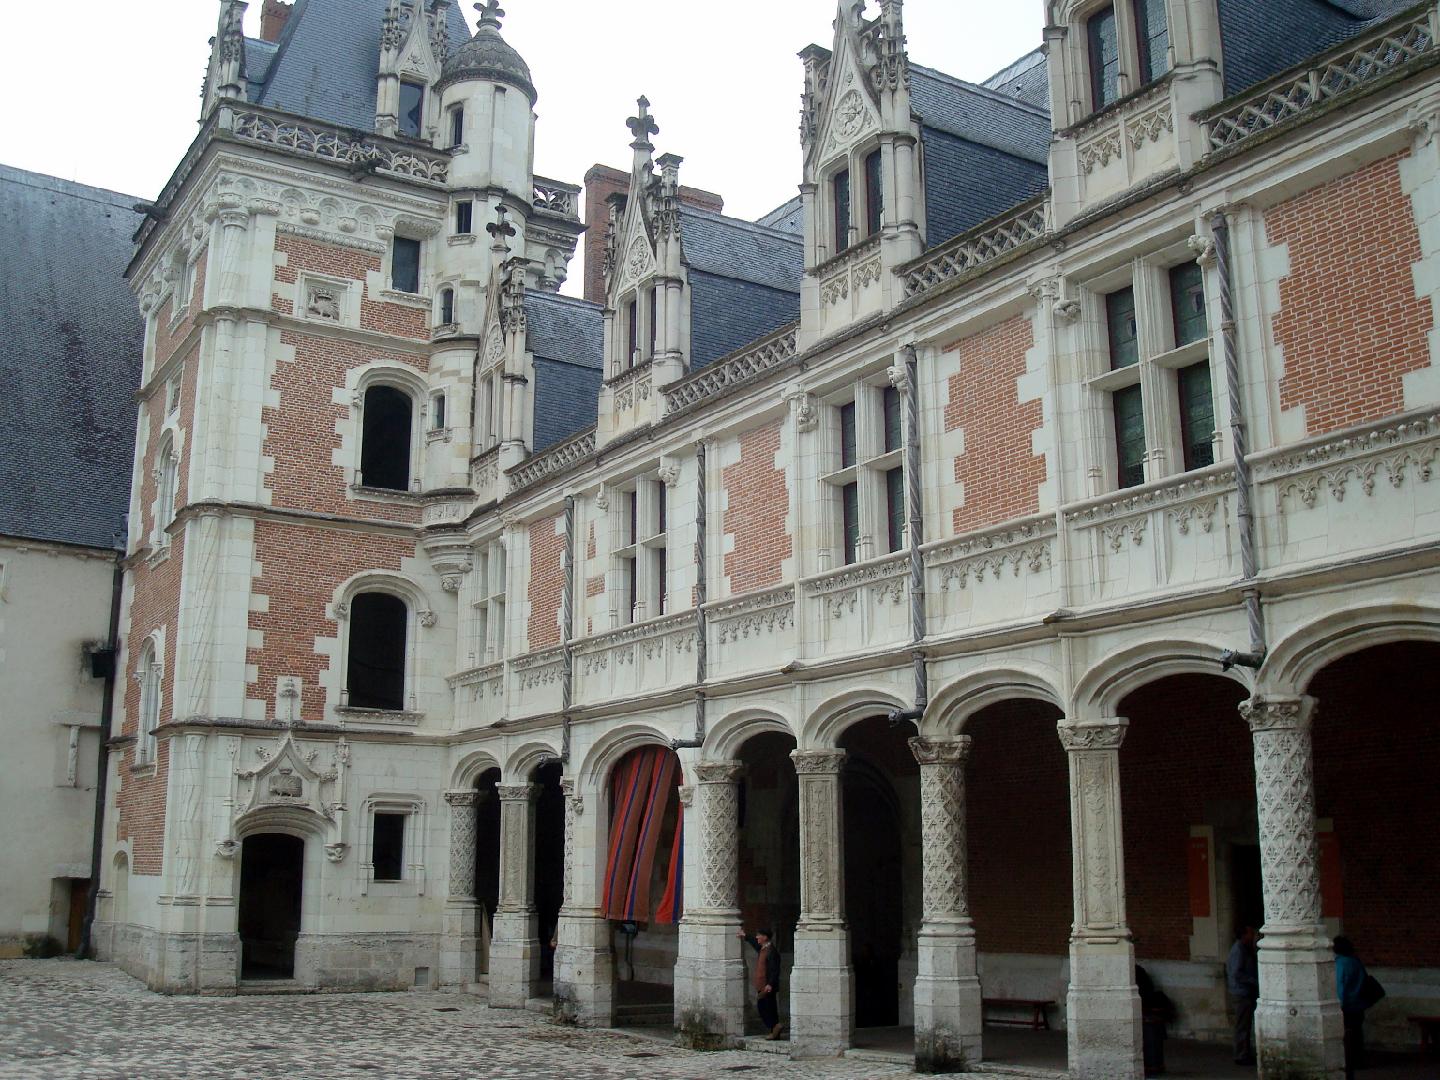 dsc020522.jpg - La faade intrieure de laile Louis XII, de style gothique flamboyant